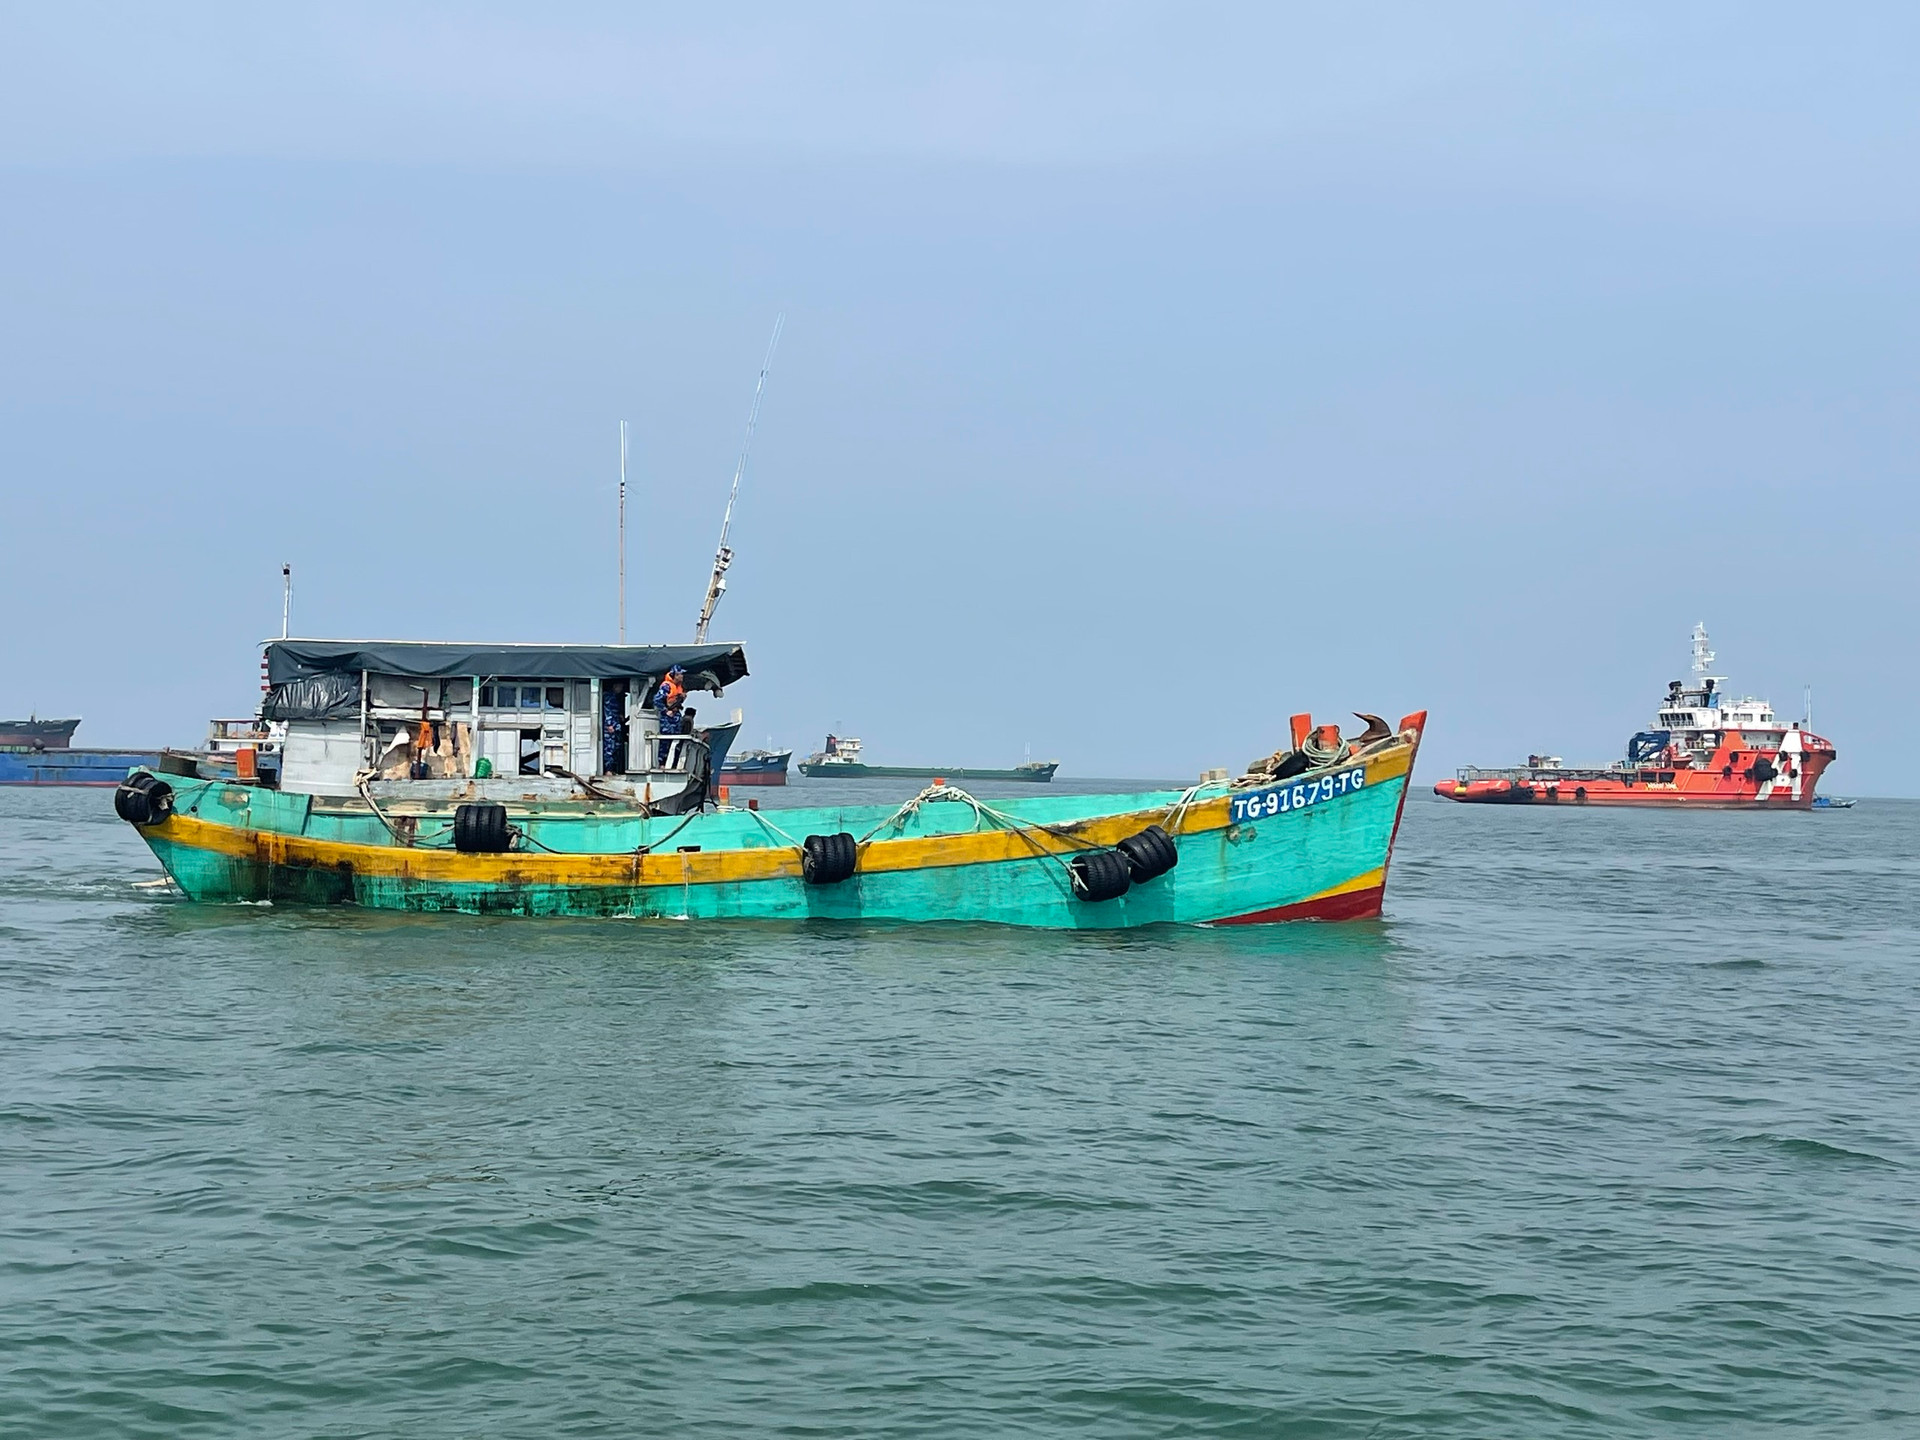 Bộ Tư lệnh Cảnh sát biển đã lập biên bản vi phạm hành chính, đưa tàu về TP Vũng Tàu để tiếp tục điều tra xử lý theo quy định của pháp luật.